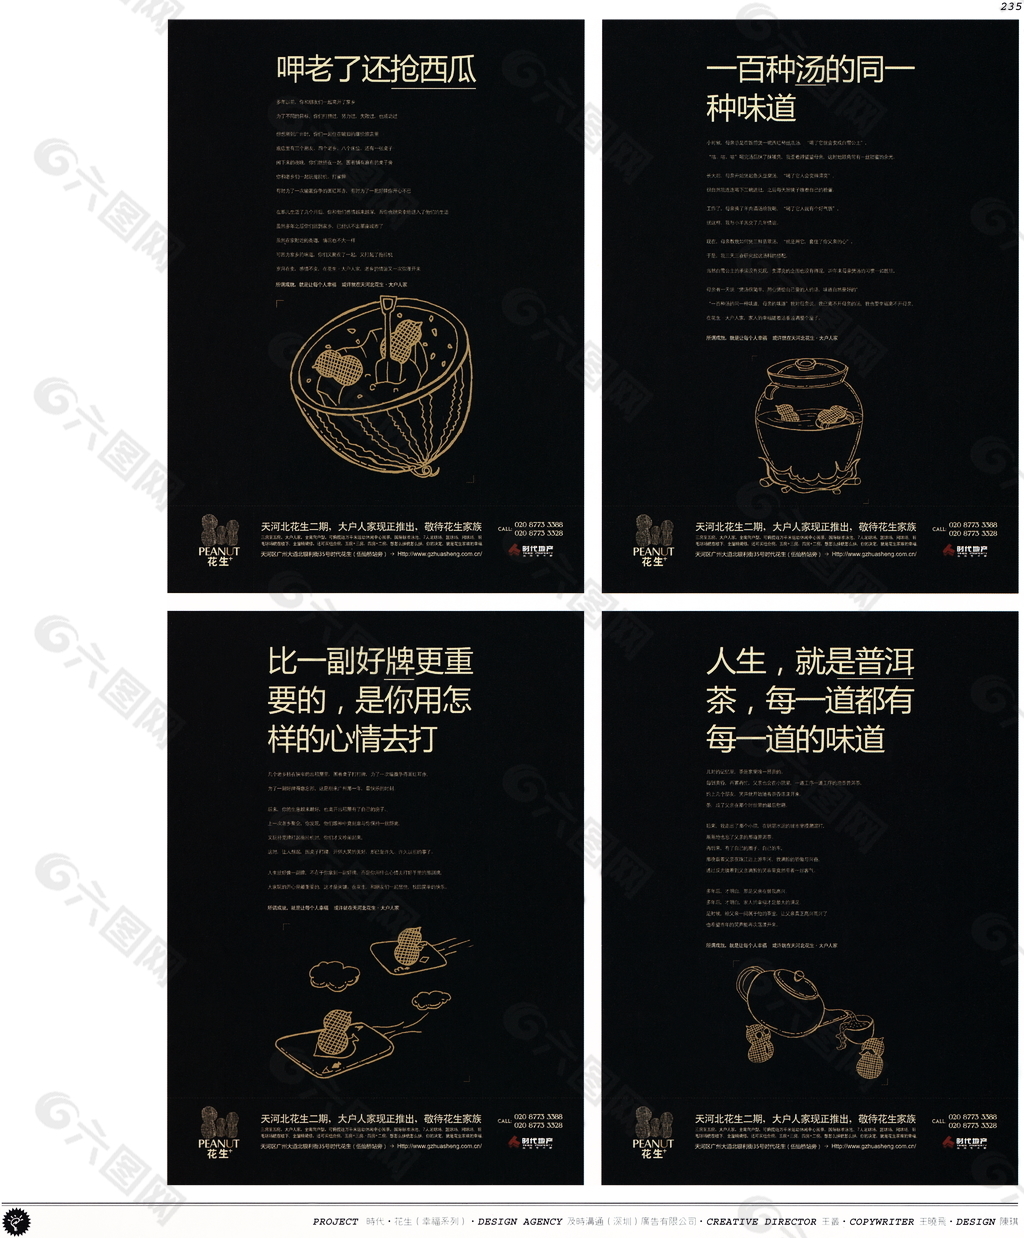 中国房地产广告年鉴 第一册 创意设计_0223